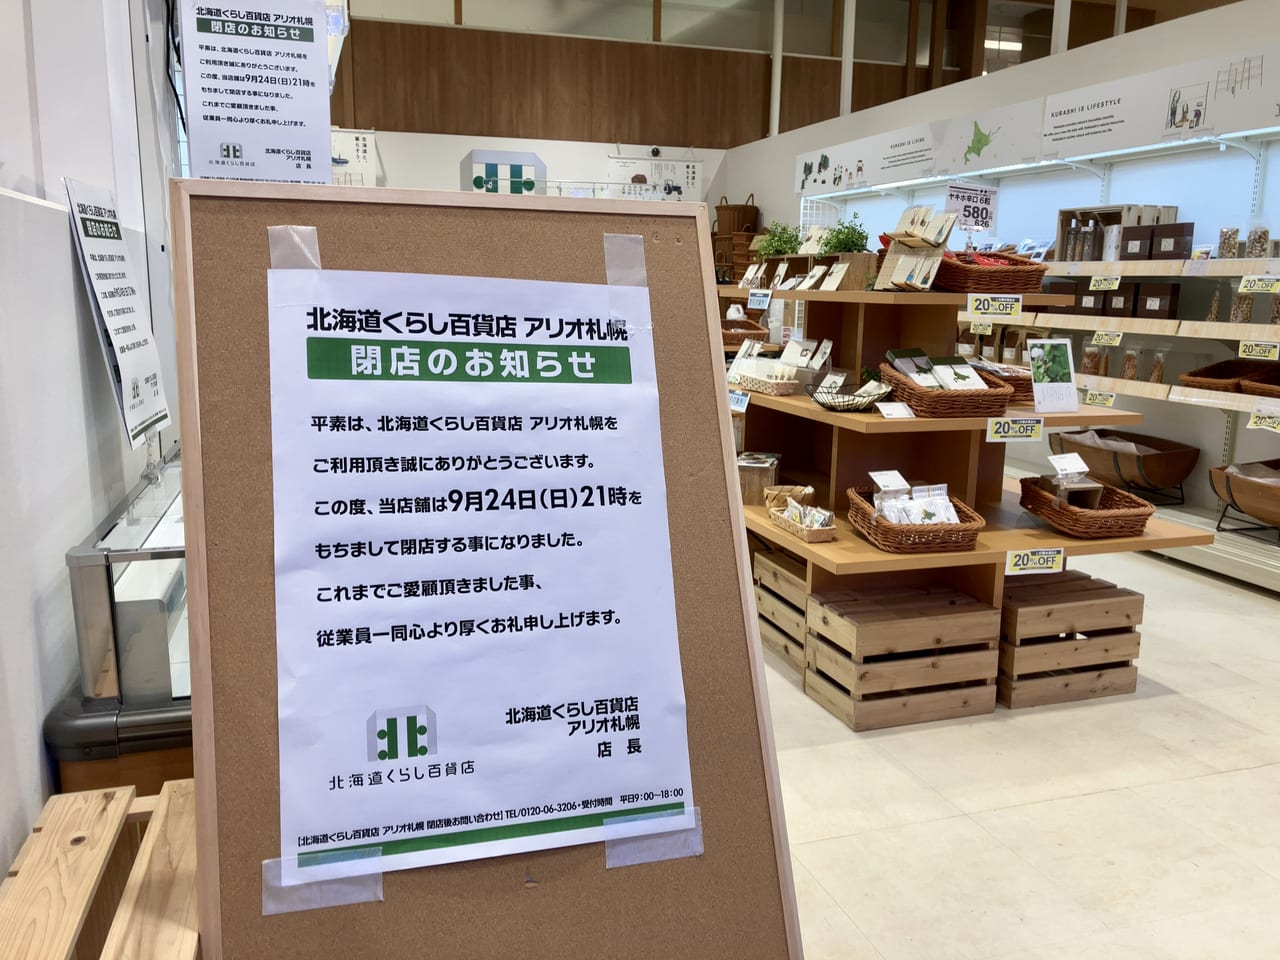 残念。北海道ゆかりのものがずらりとそろう「アリオ札幌」の「北海道くらし百貨店」が9月24日で閉店します。